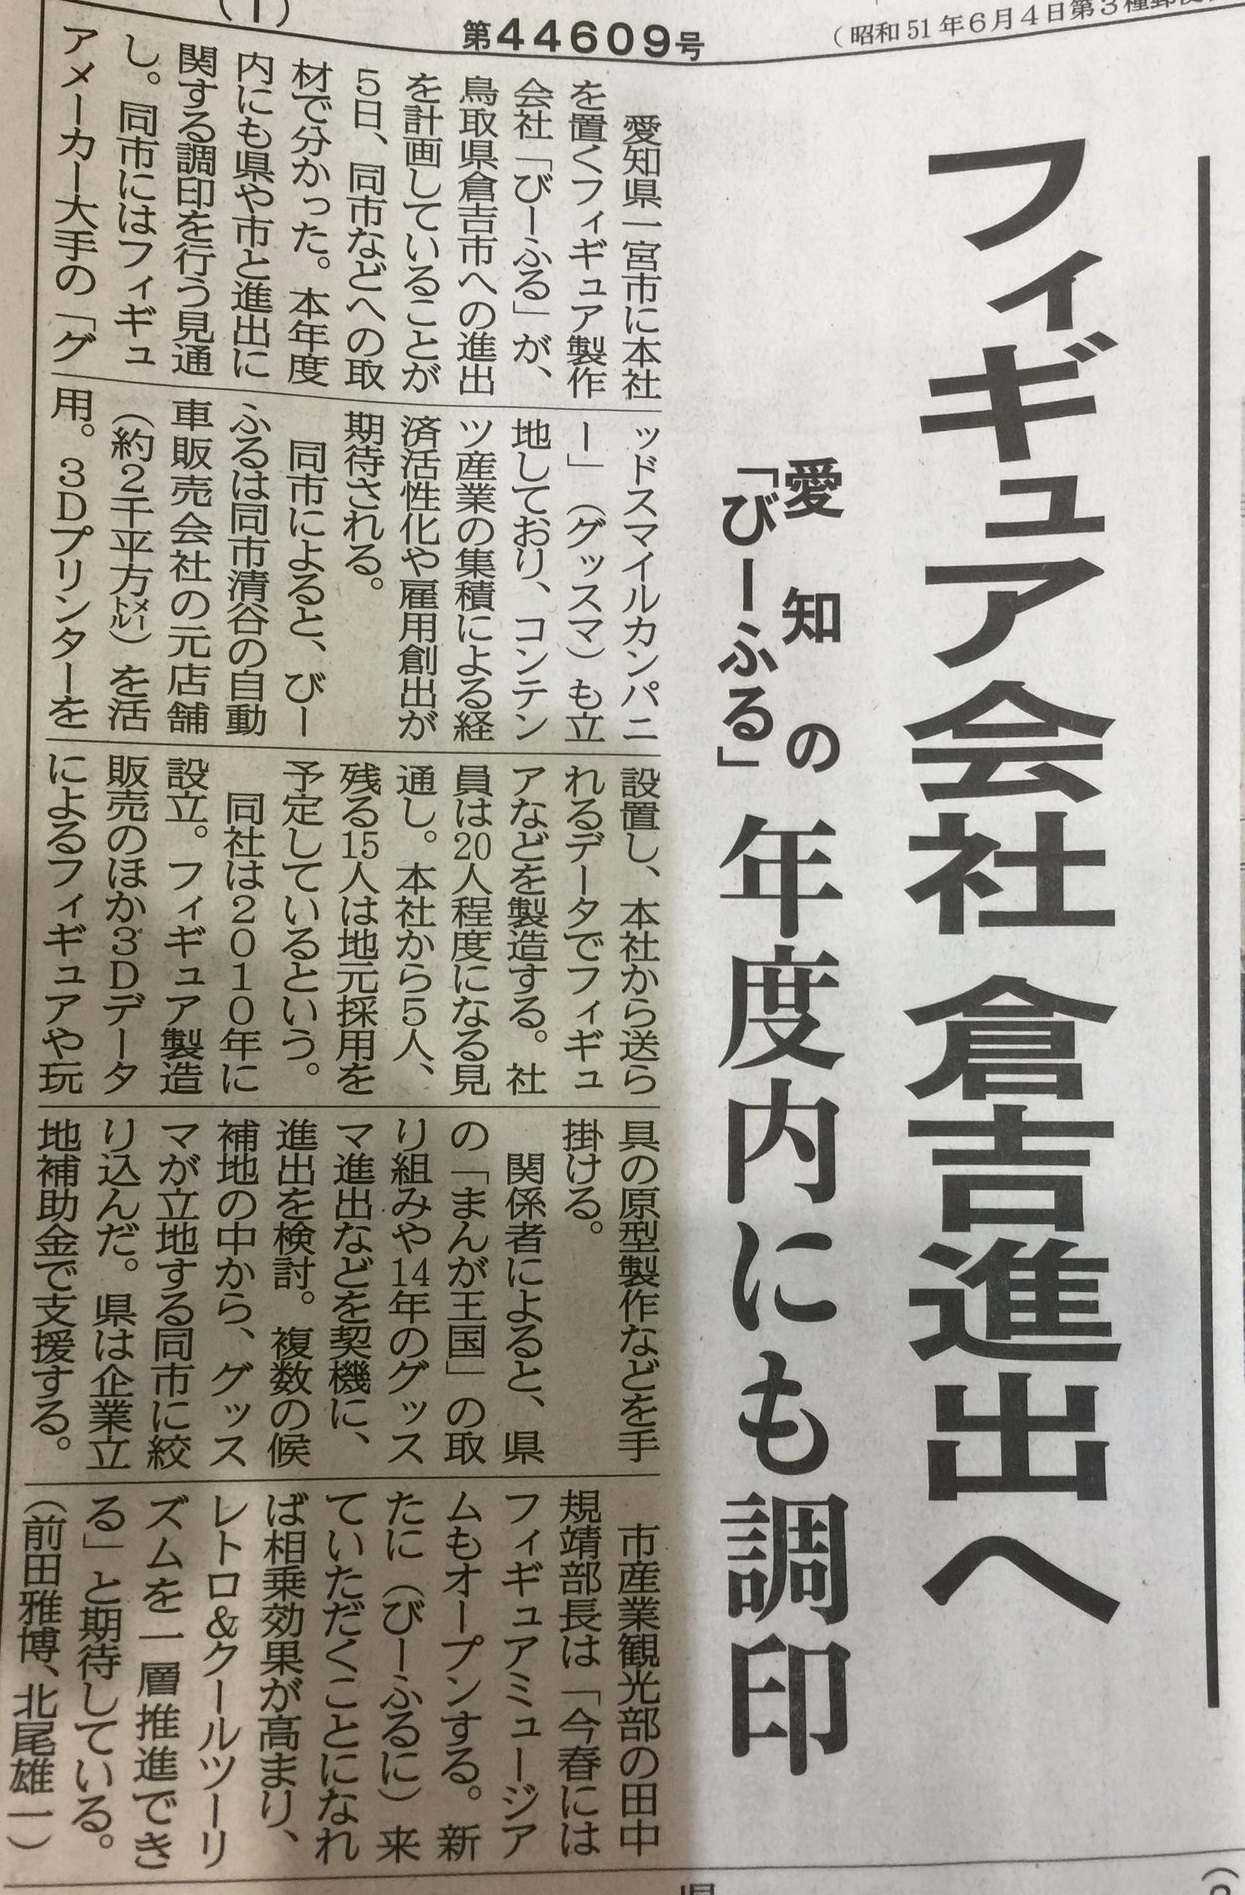 フィギュア会社 びーふる プルクラ グッスマ工場のある鳥取県倉吉市に進出決定 Fig速 フィギュア プラモ 新作ホビー情報まとめ